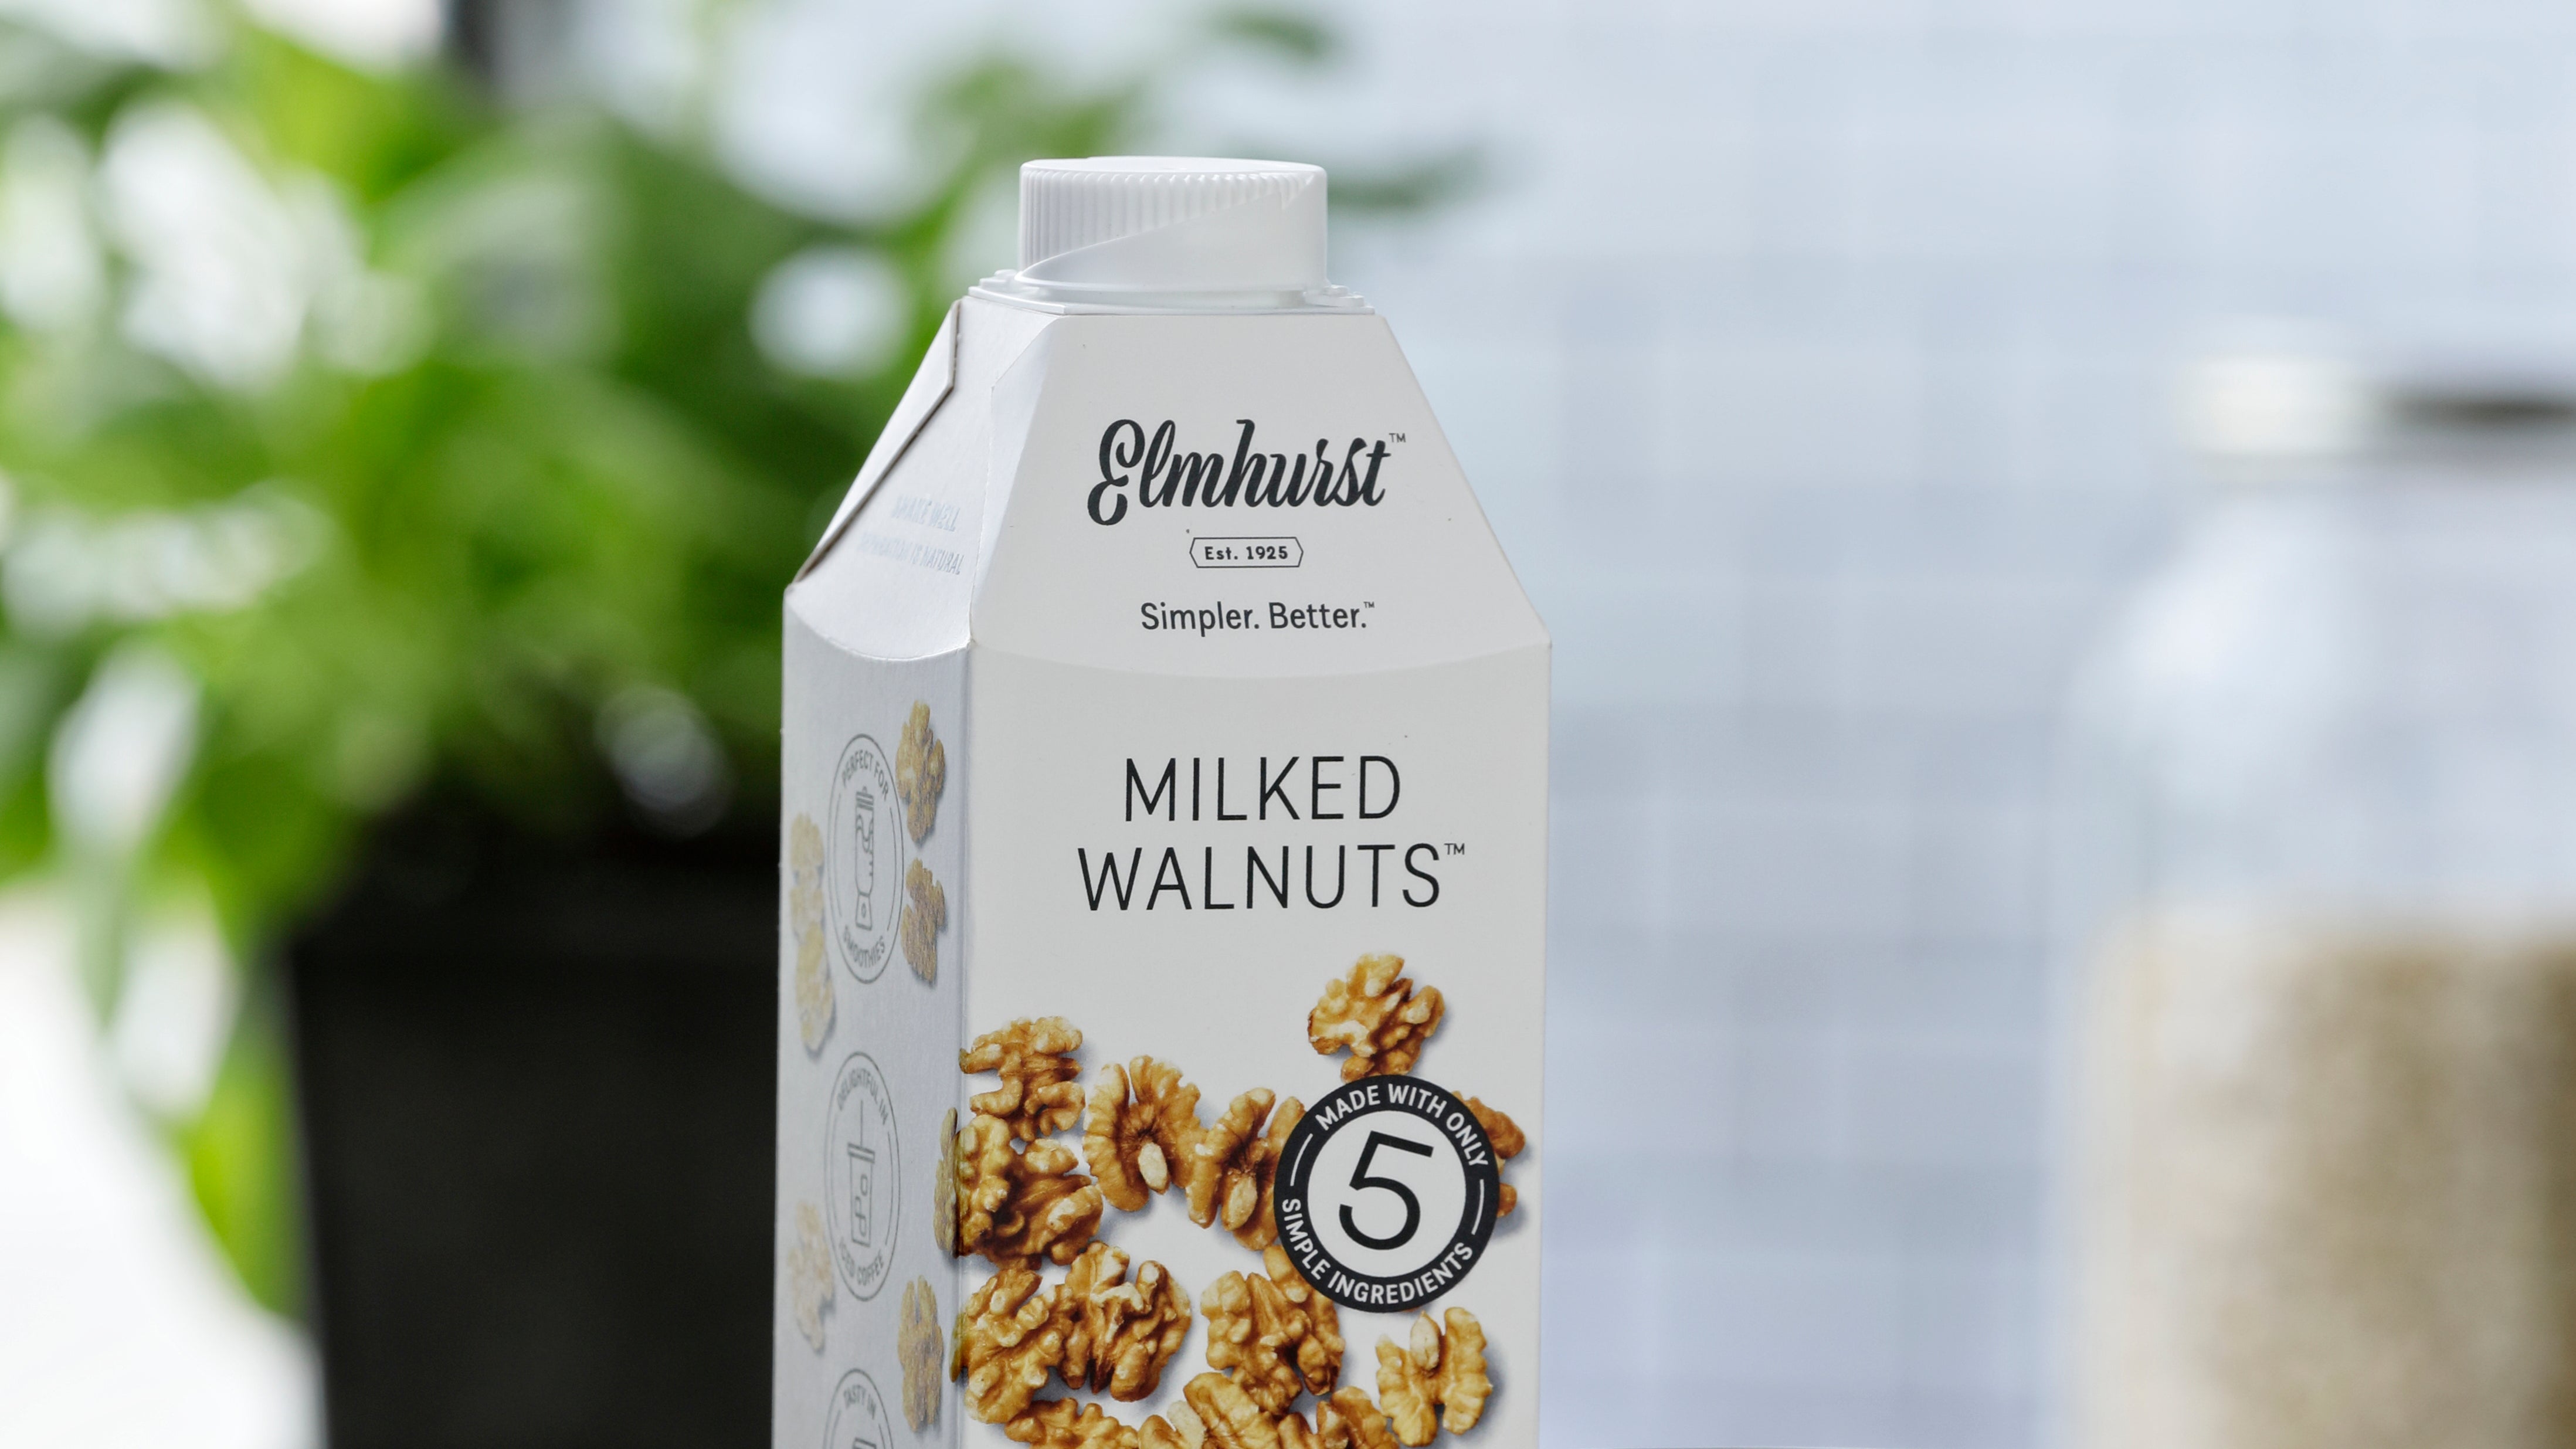 Elmhurst walnut milk